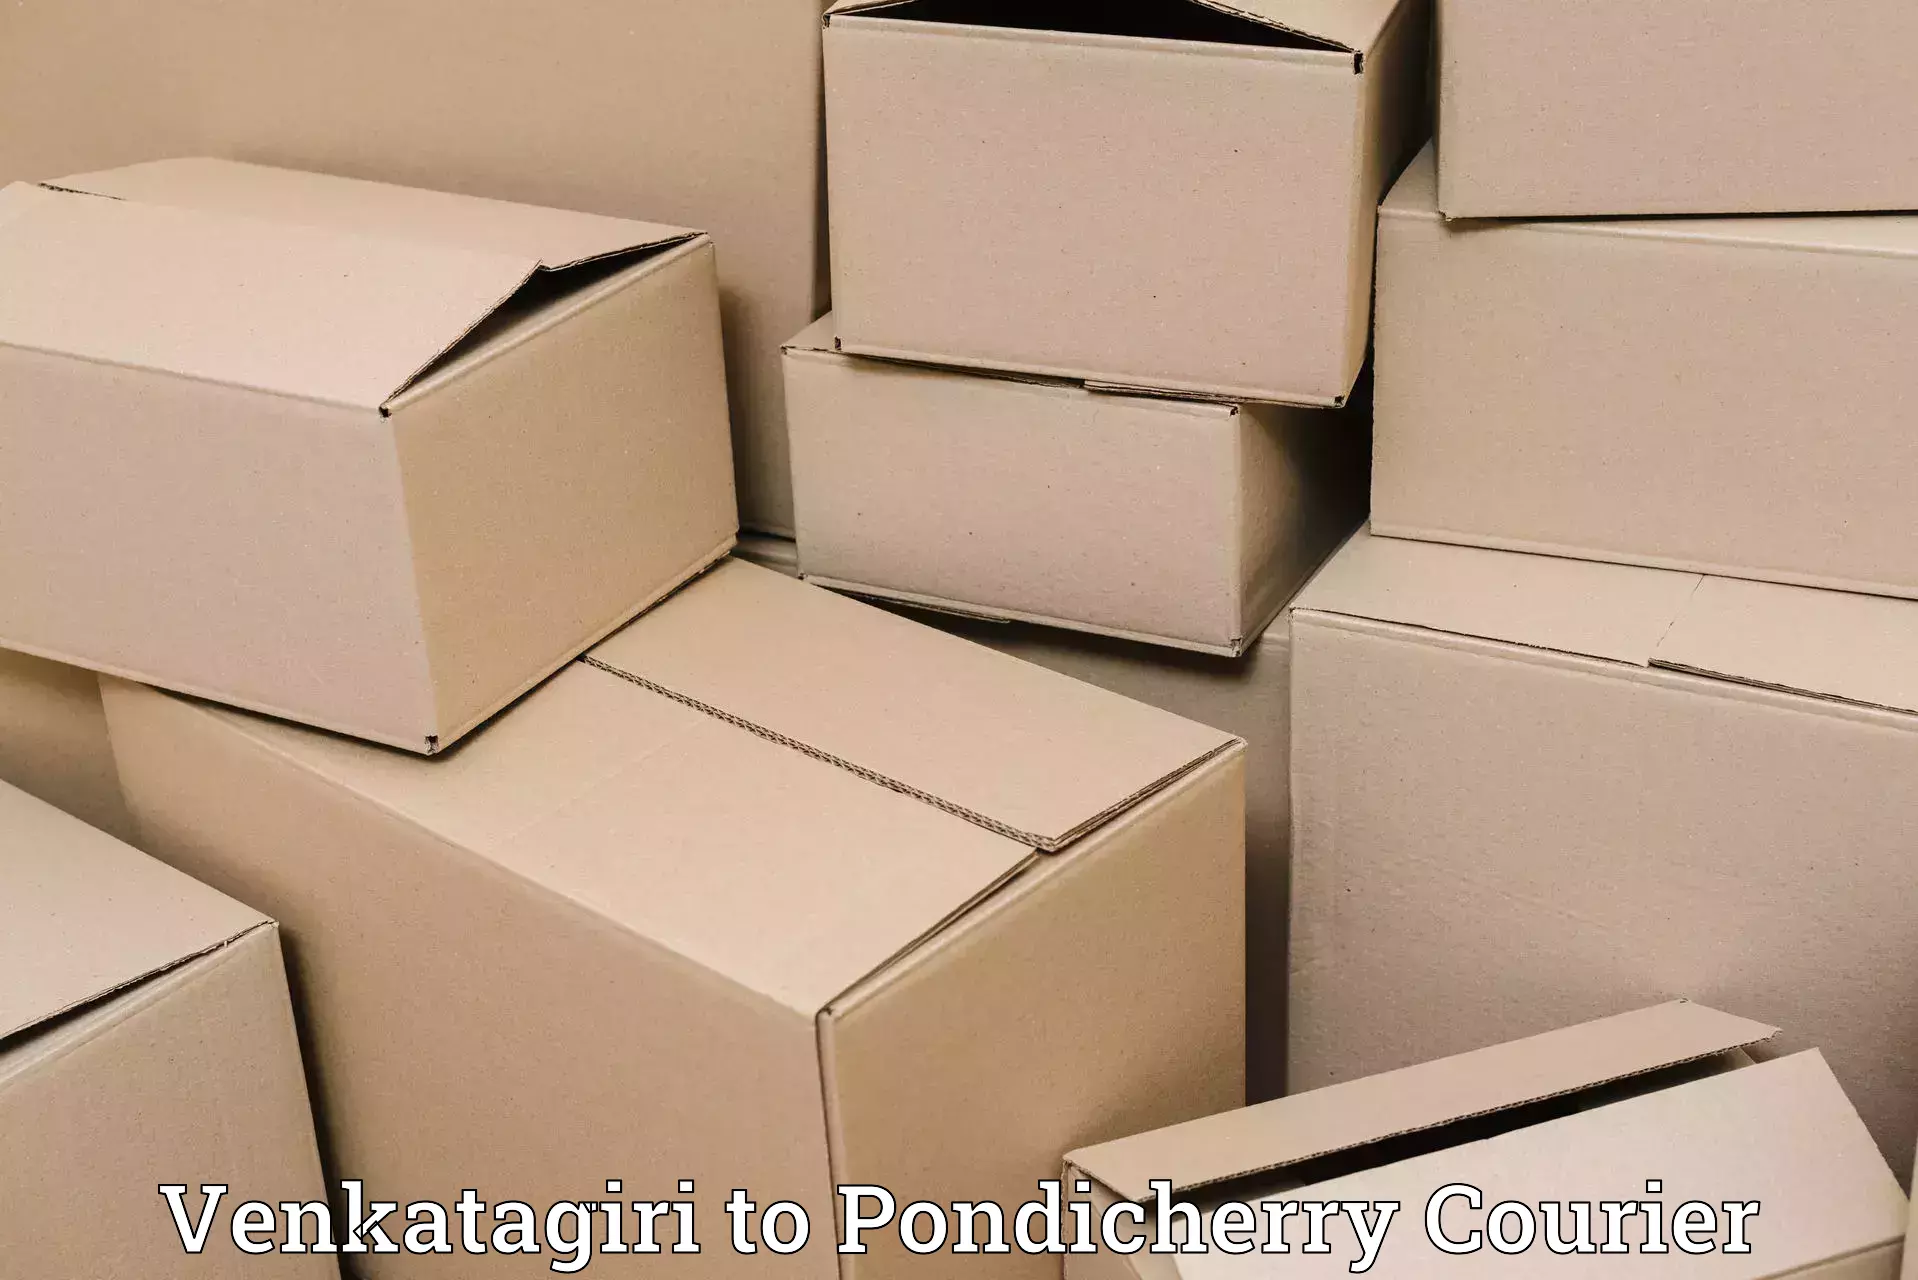 Luggage delivery optimization Venkatagiri to Pondicherry